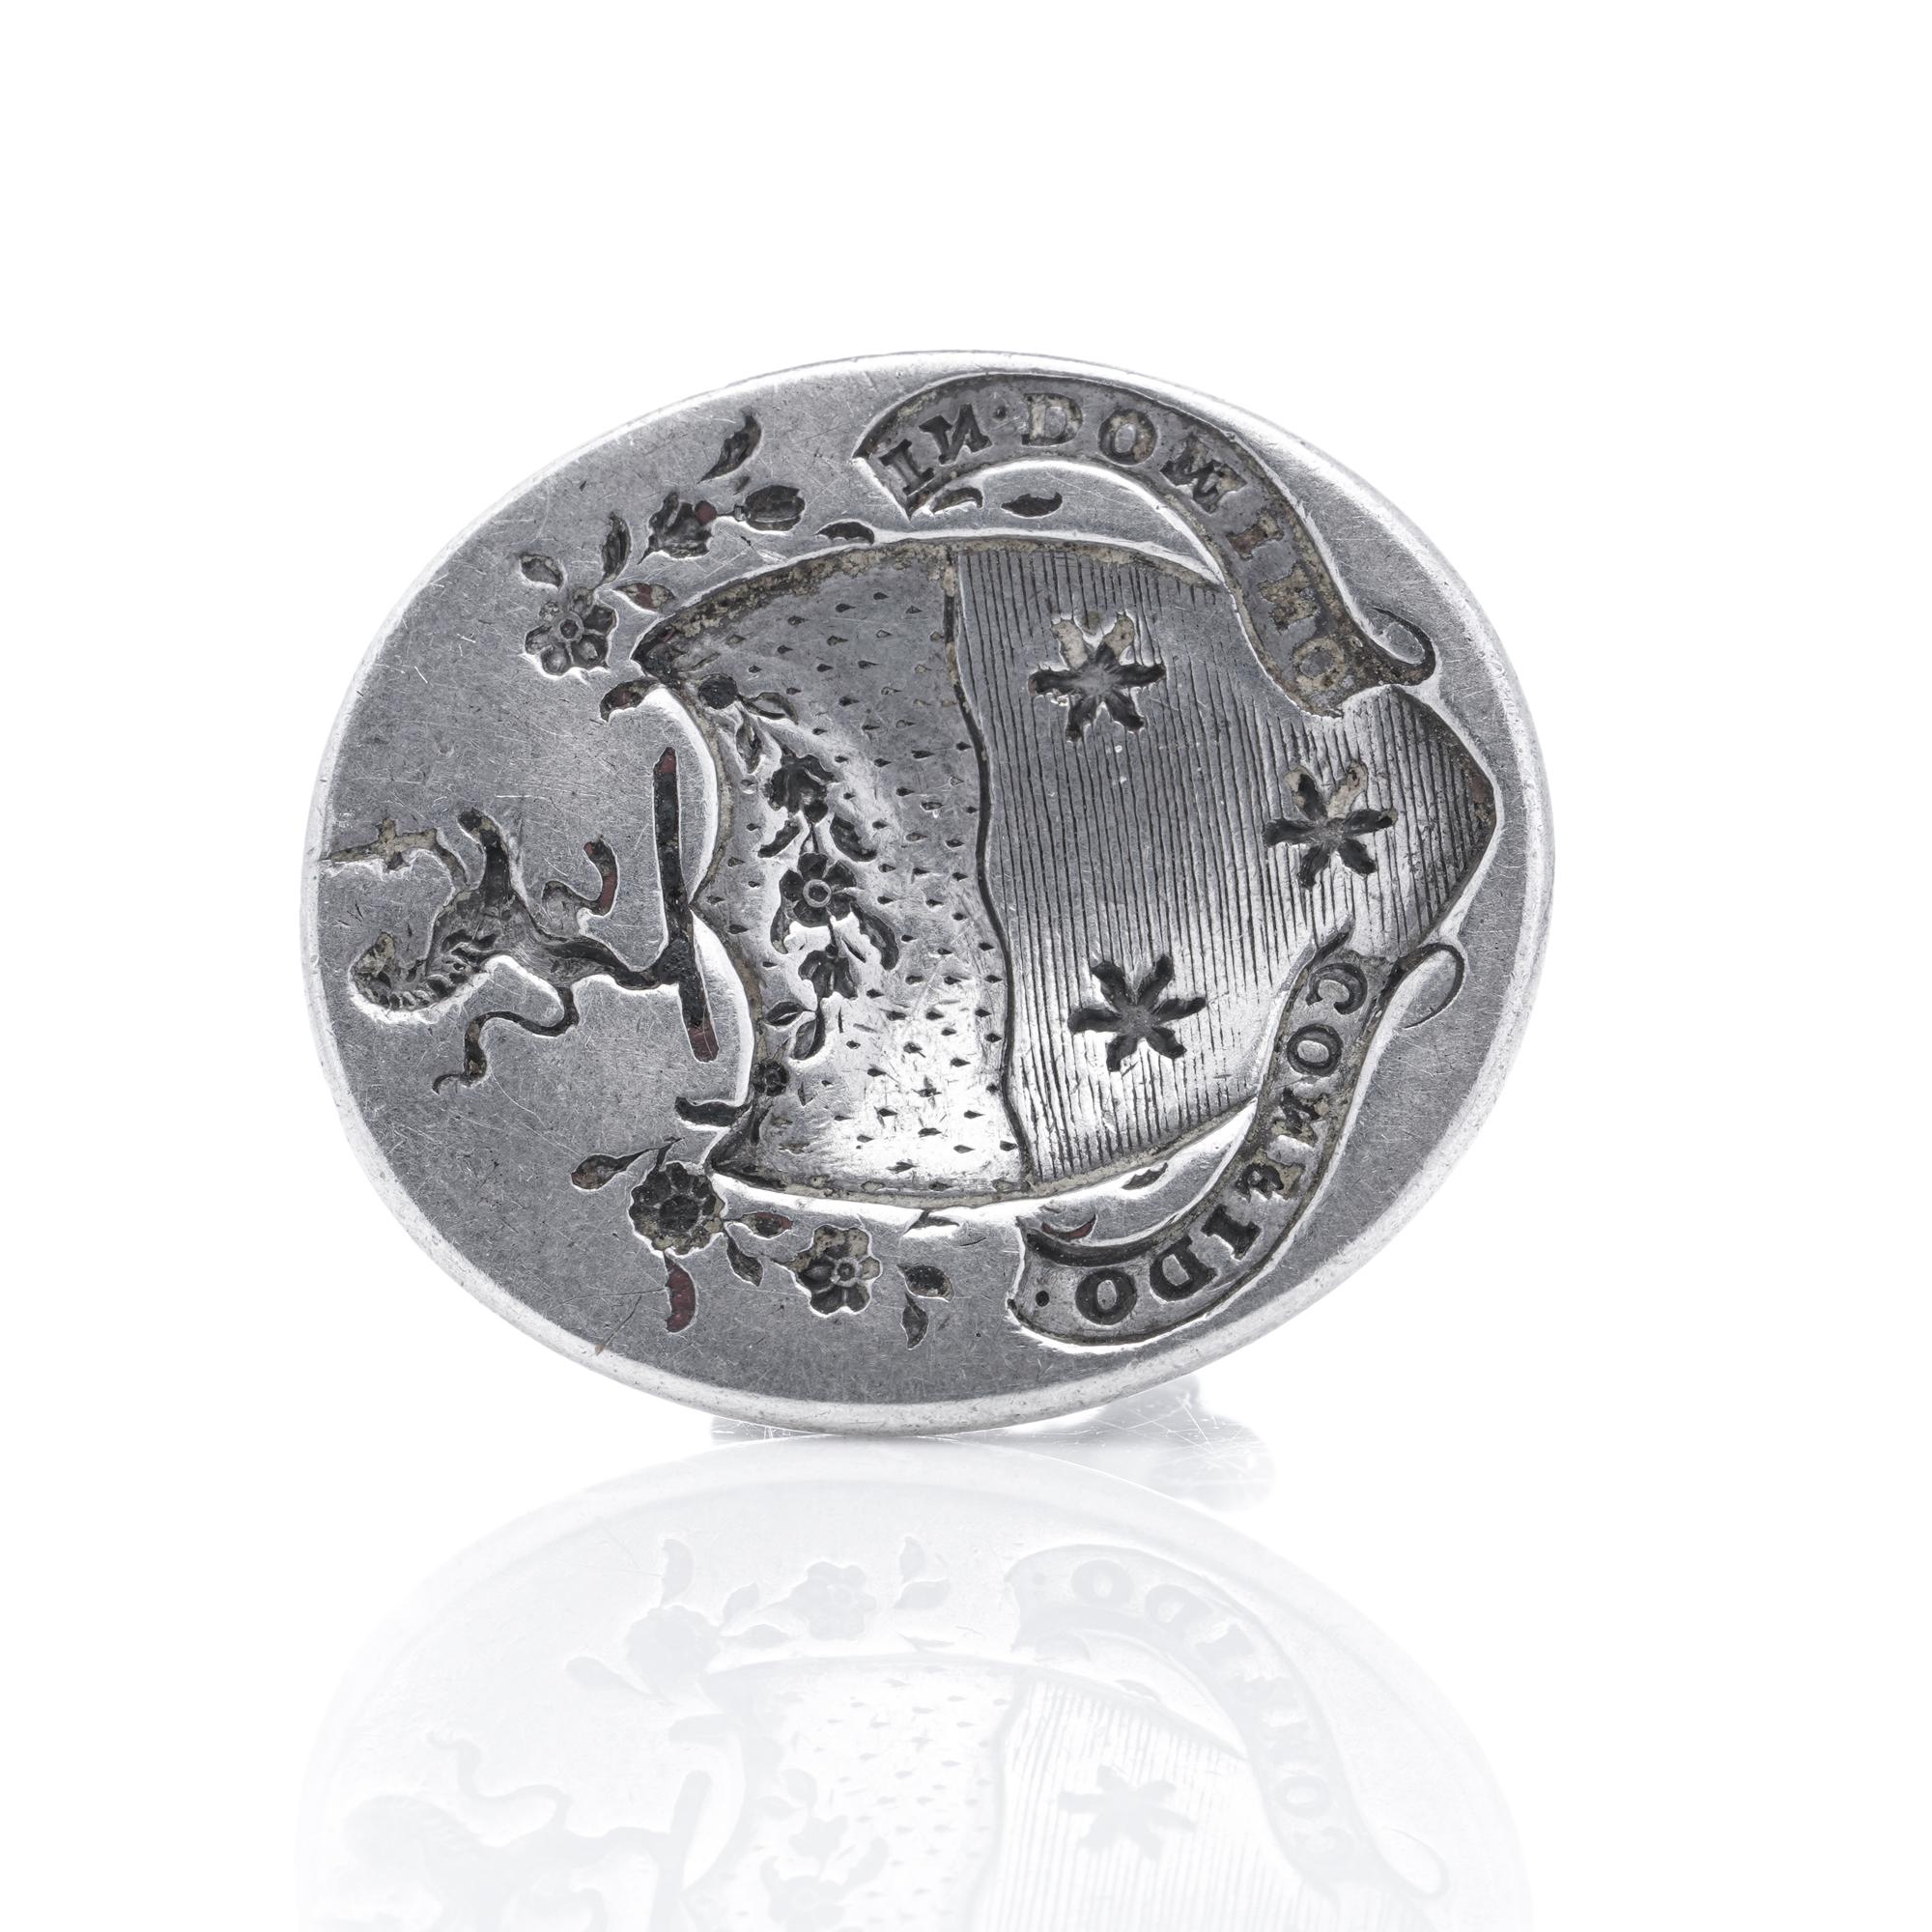 Voici une pièce remarquable : le sceau de cire en argent géorgien de Hester Bateman. Orné du lion passant et des marques HB, ce sceau mesure 2,5 cm de haut pour 1,8 cm de large et pèse 10 grammes au total.

Il s'agit d'un exquis sceau de porte en